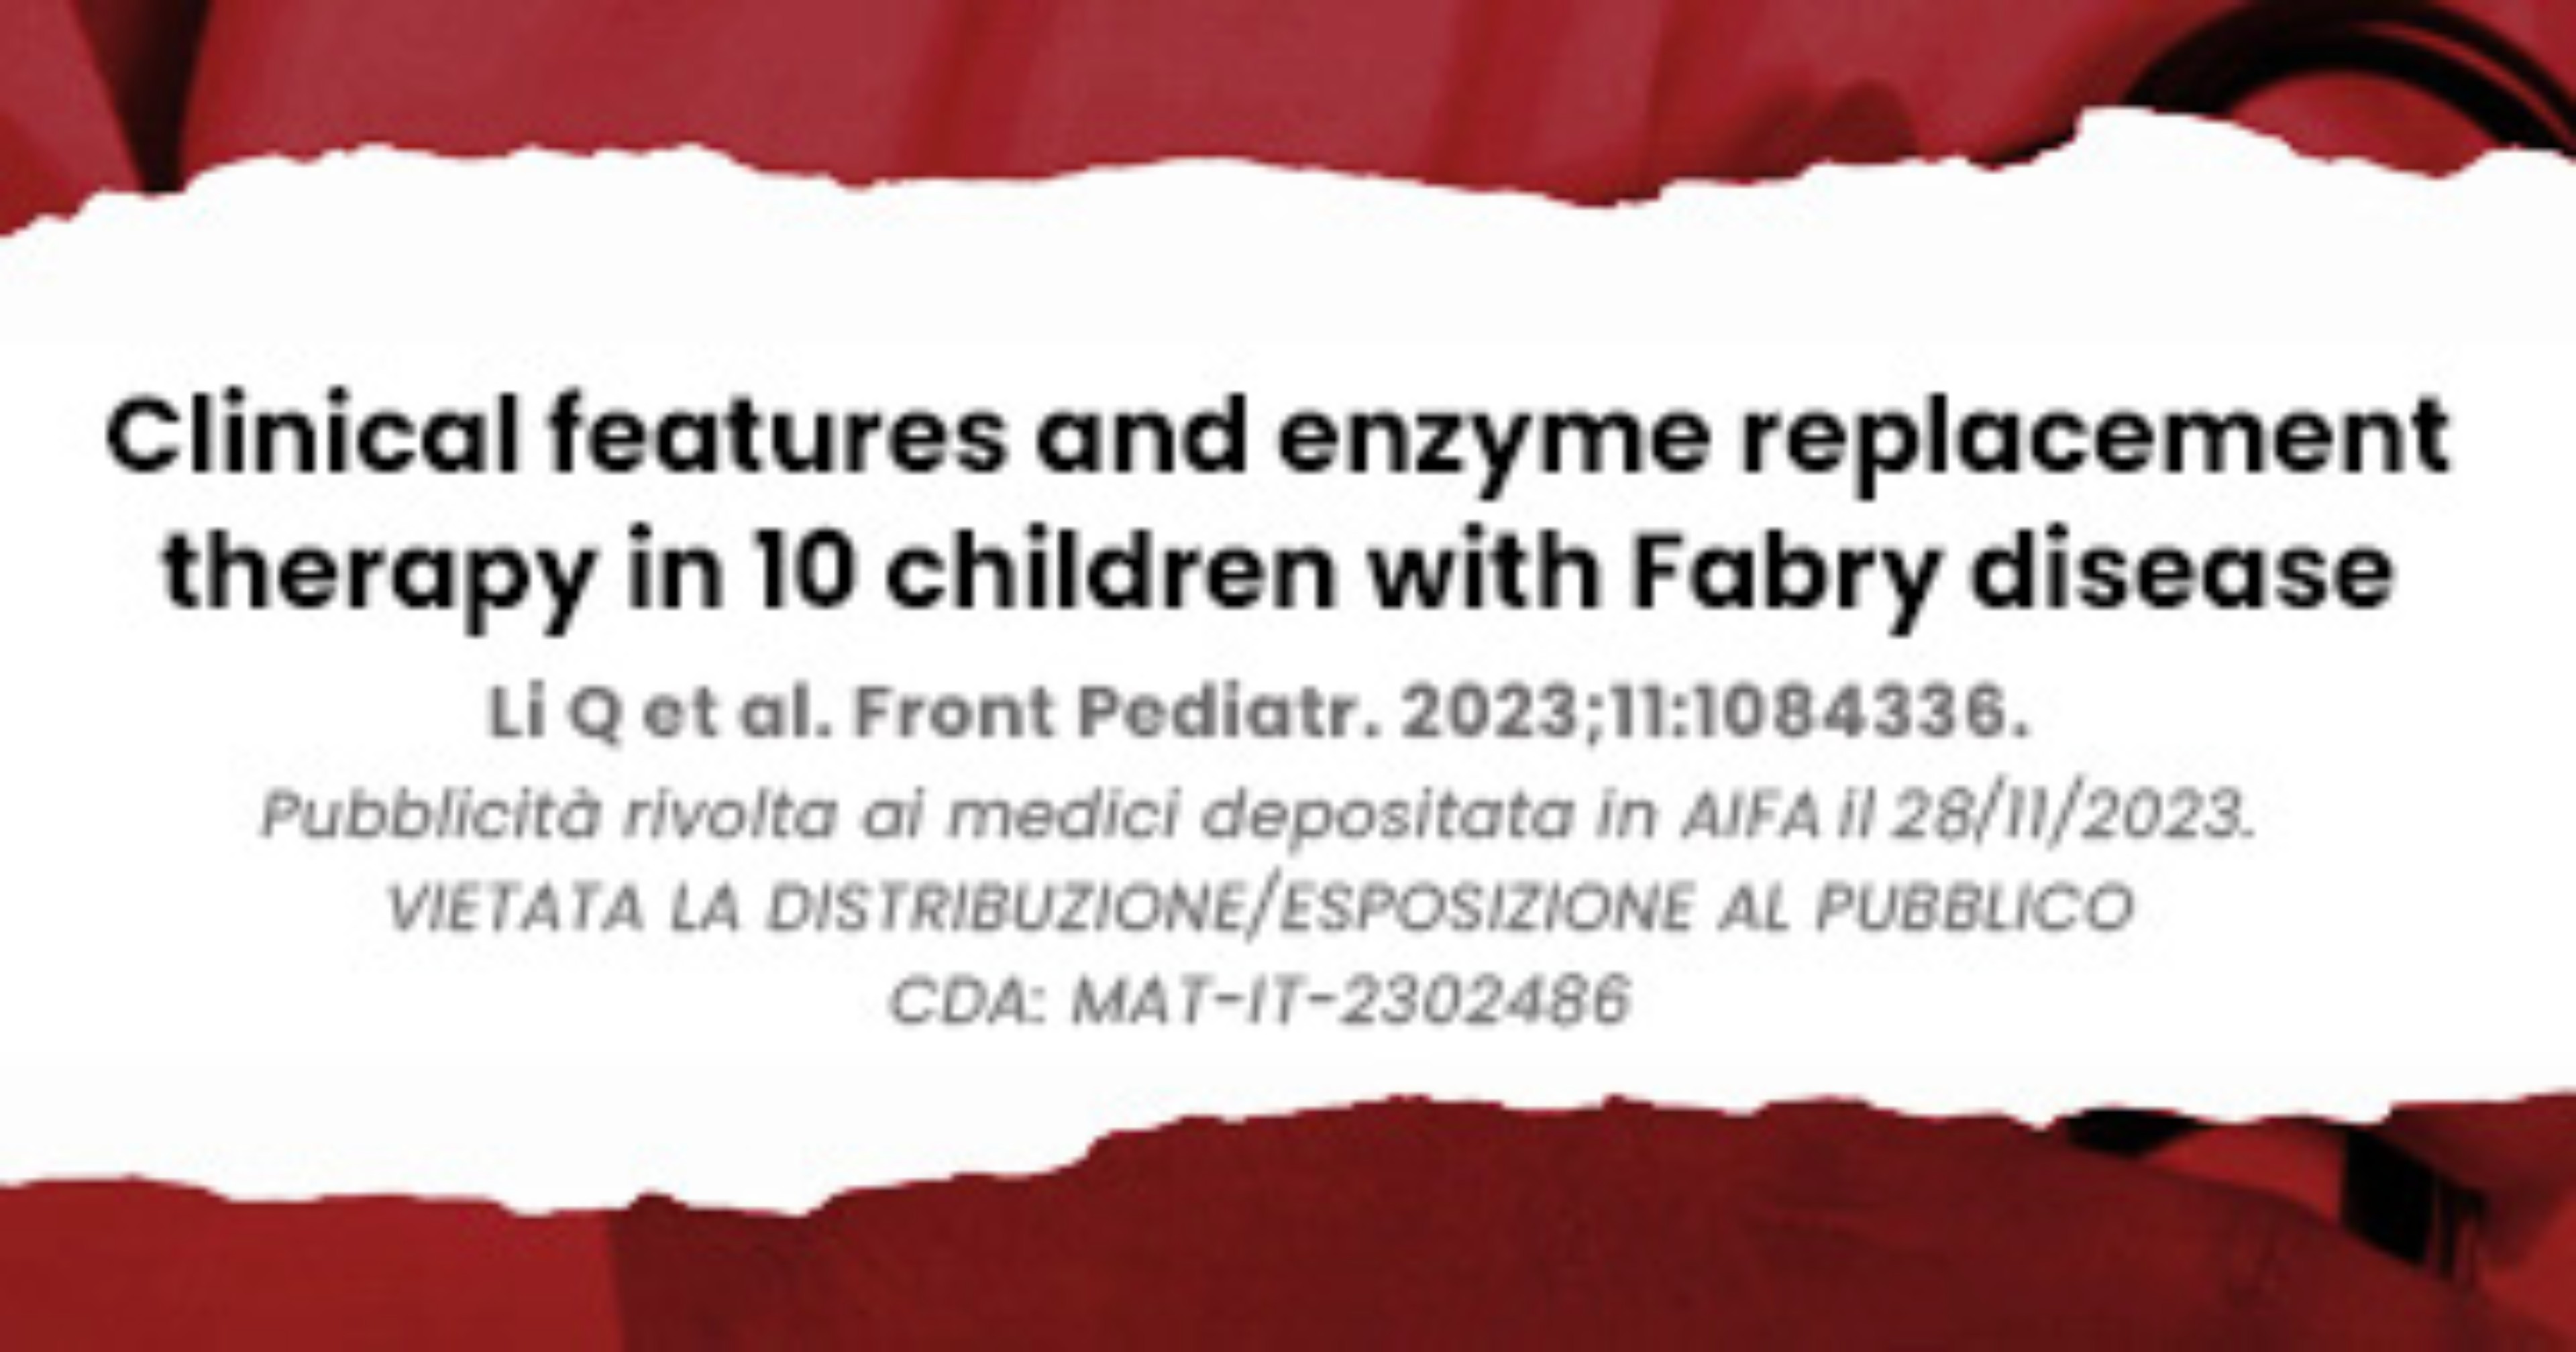 Caratteristiche-cliniche-e-terapia-enzimatica-sostitutiva-in-10-bambini-affetti-dalla-malattia-di-Fabry-